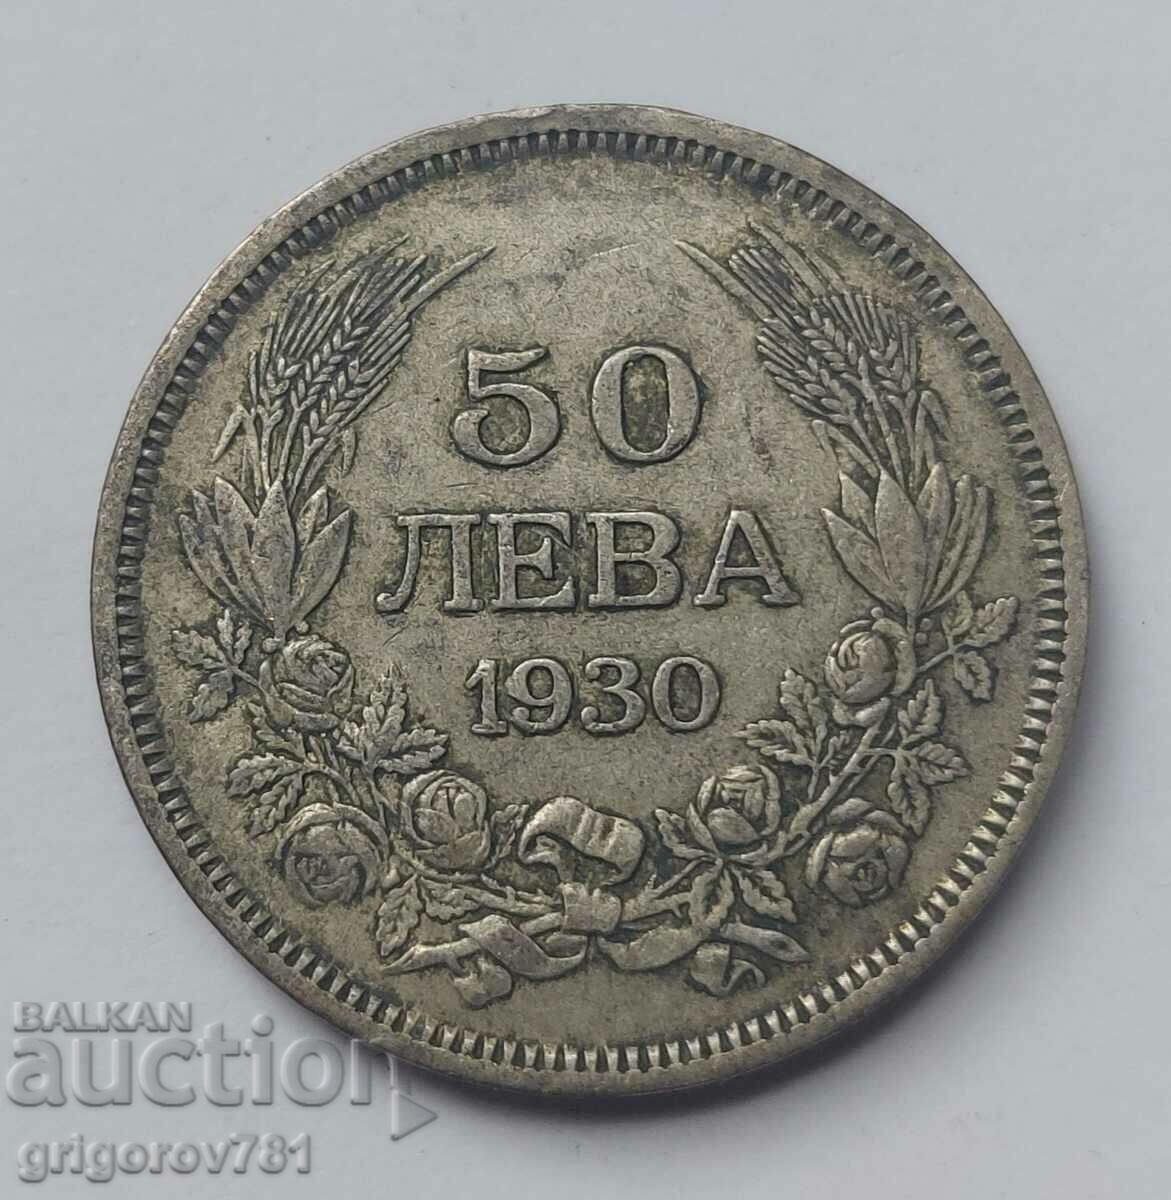 Ασήμι 50 λέβα Βουλγαρία 1930 - ασημένιο νόμισμα #39